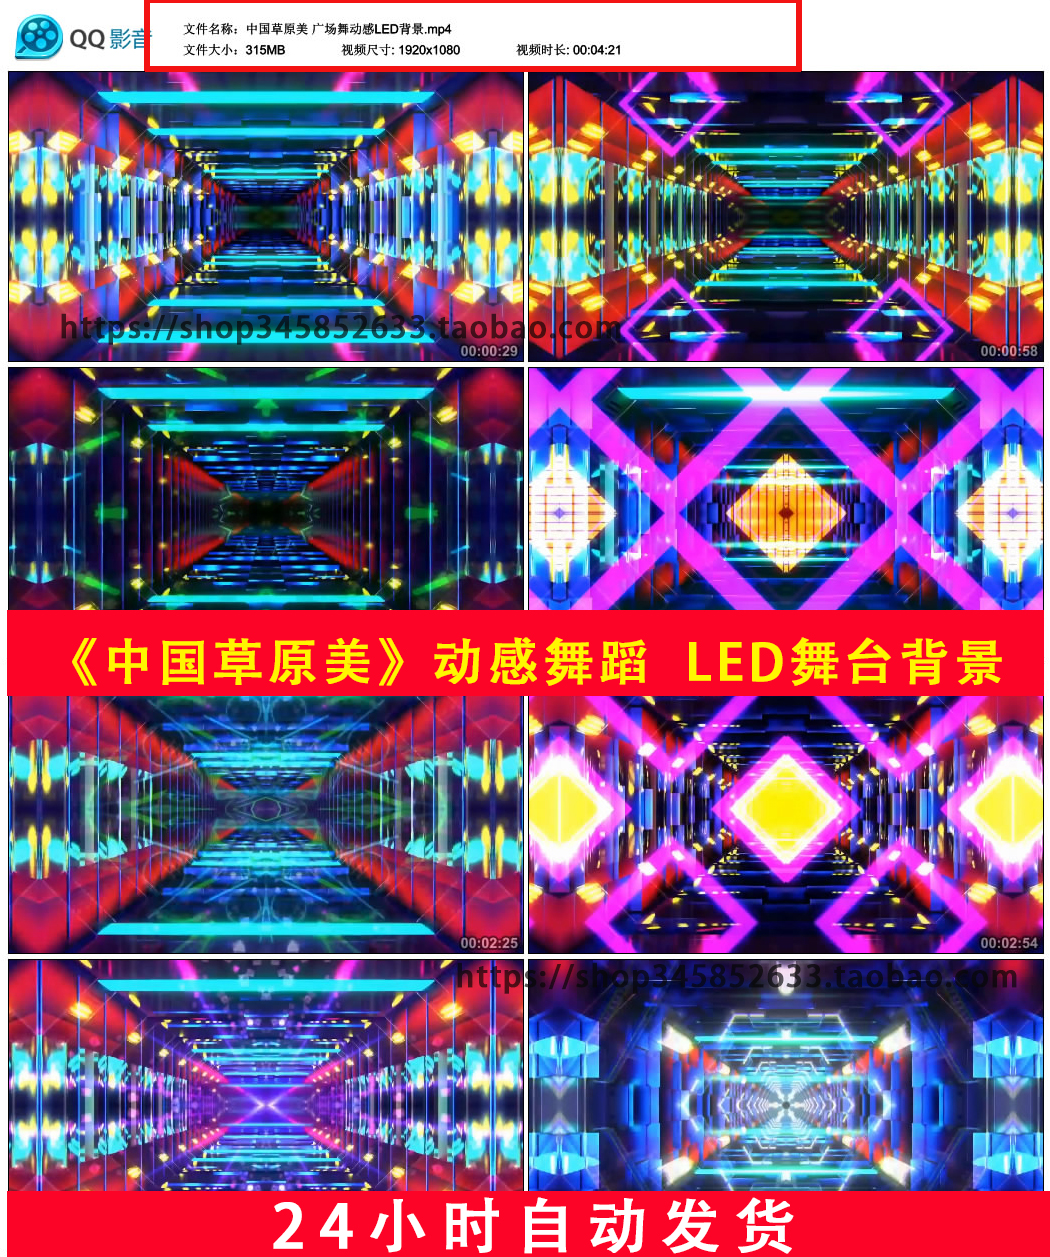 中国草原美广场舞动感万花筒电音炫酷炫舞曲LED舞台背景视频B681